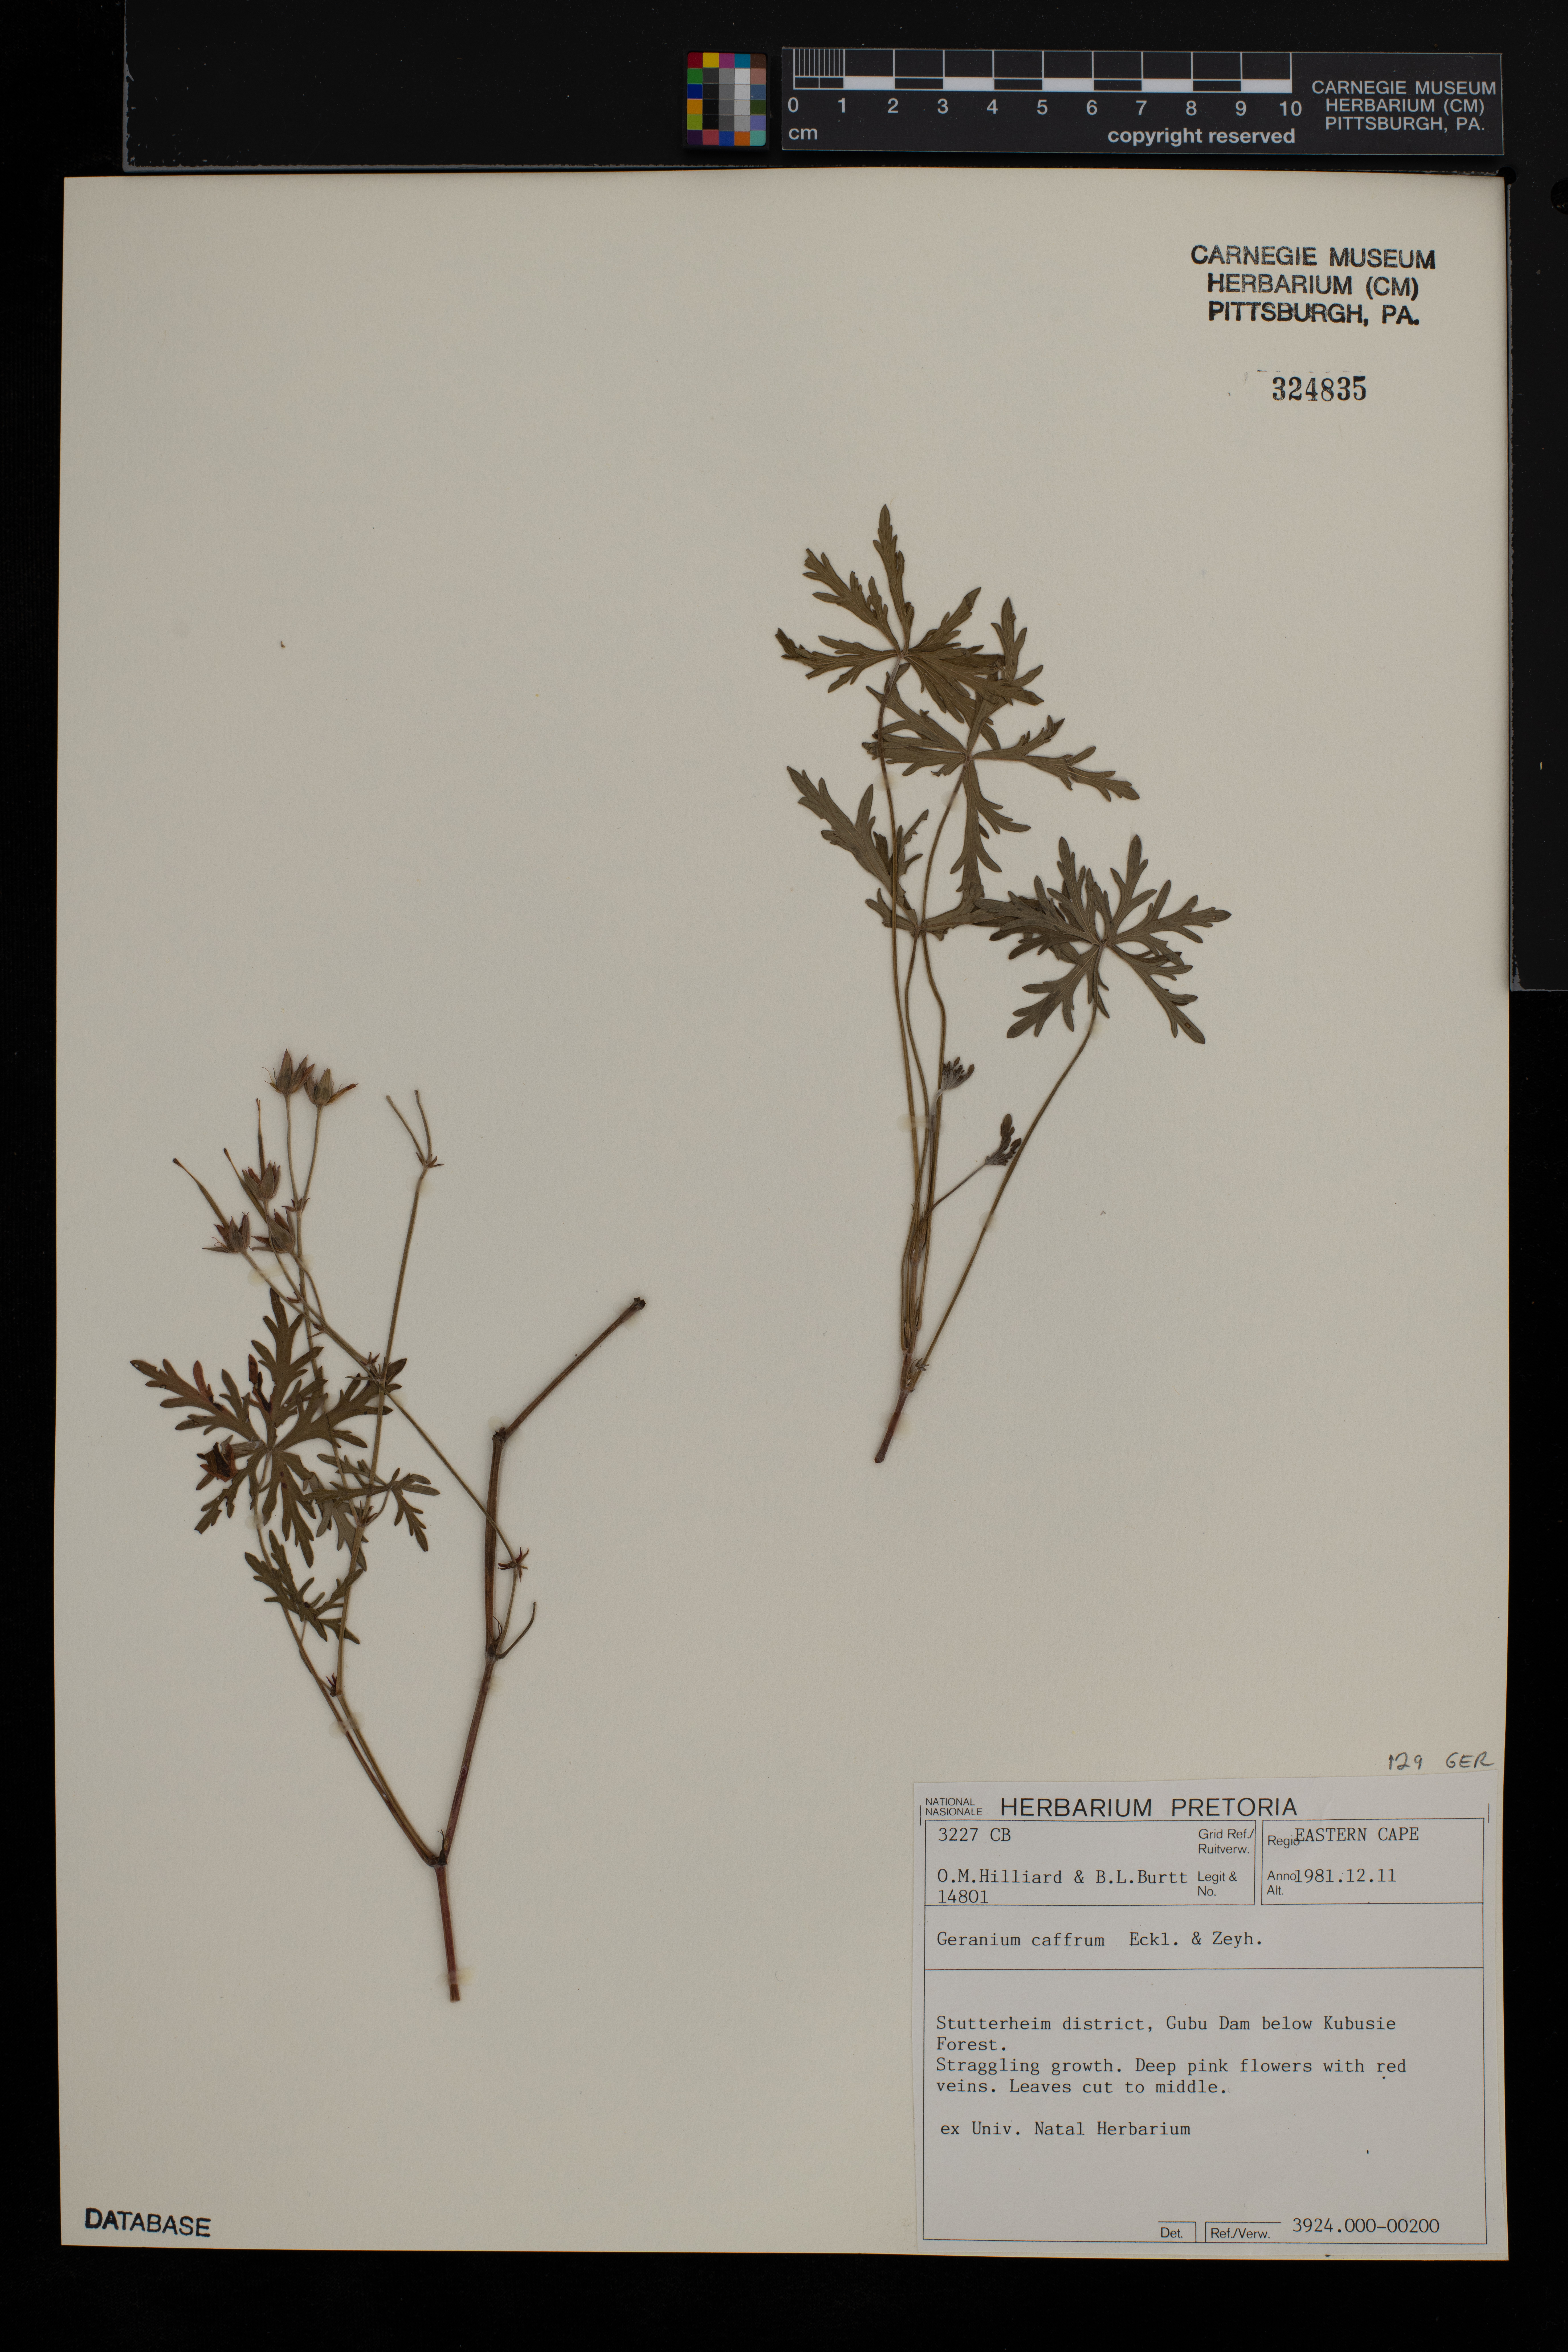 Geranium caffrum image